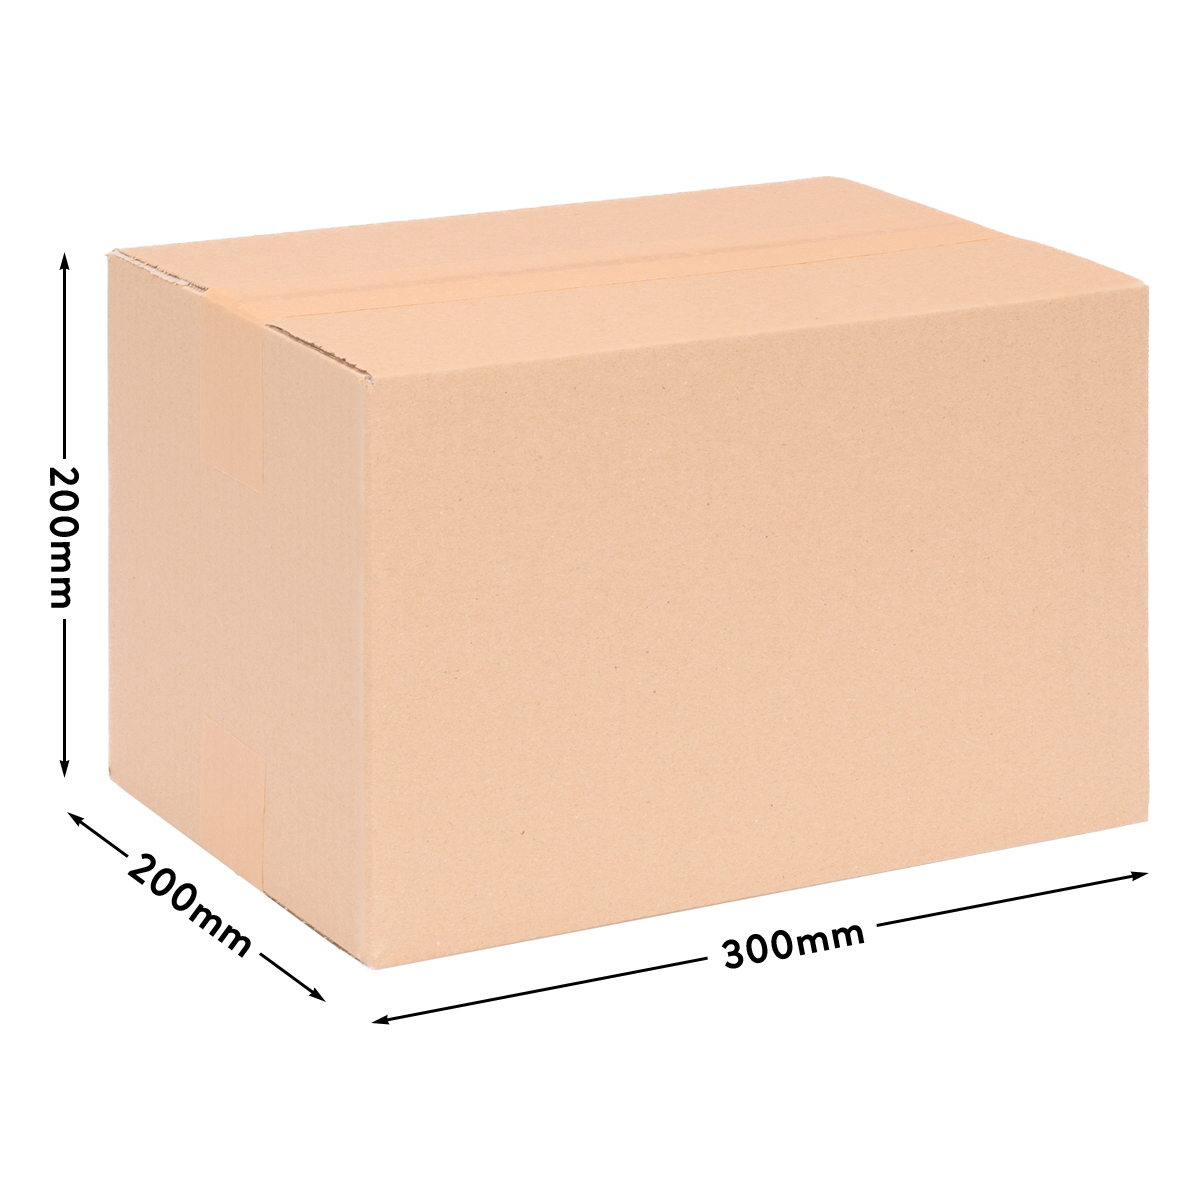 Cardboard box single wall 300x200x200 mm - KK 31